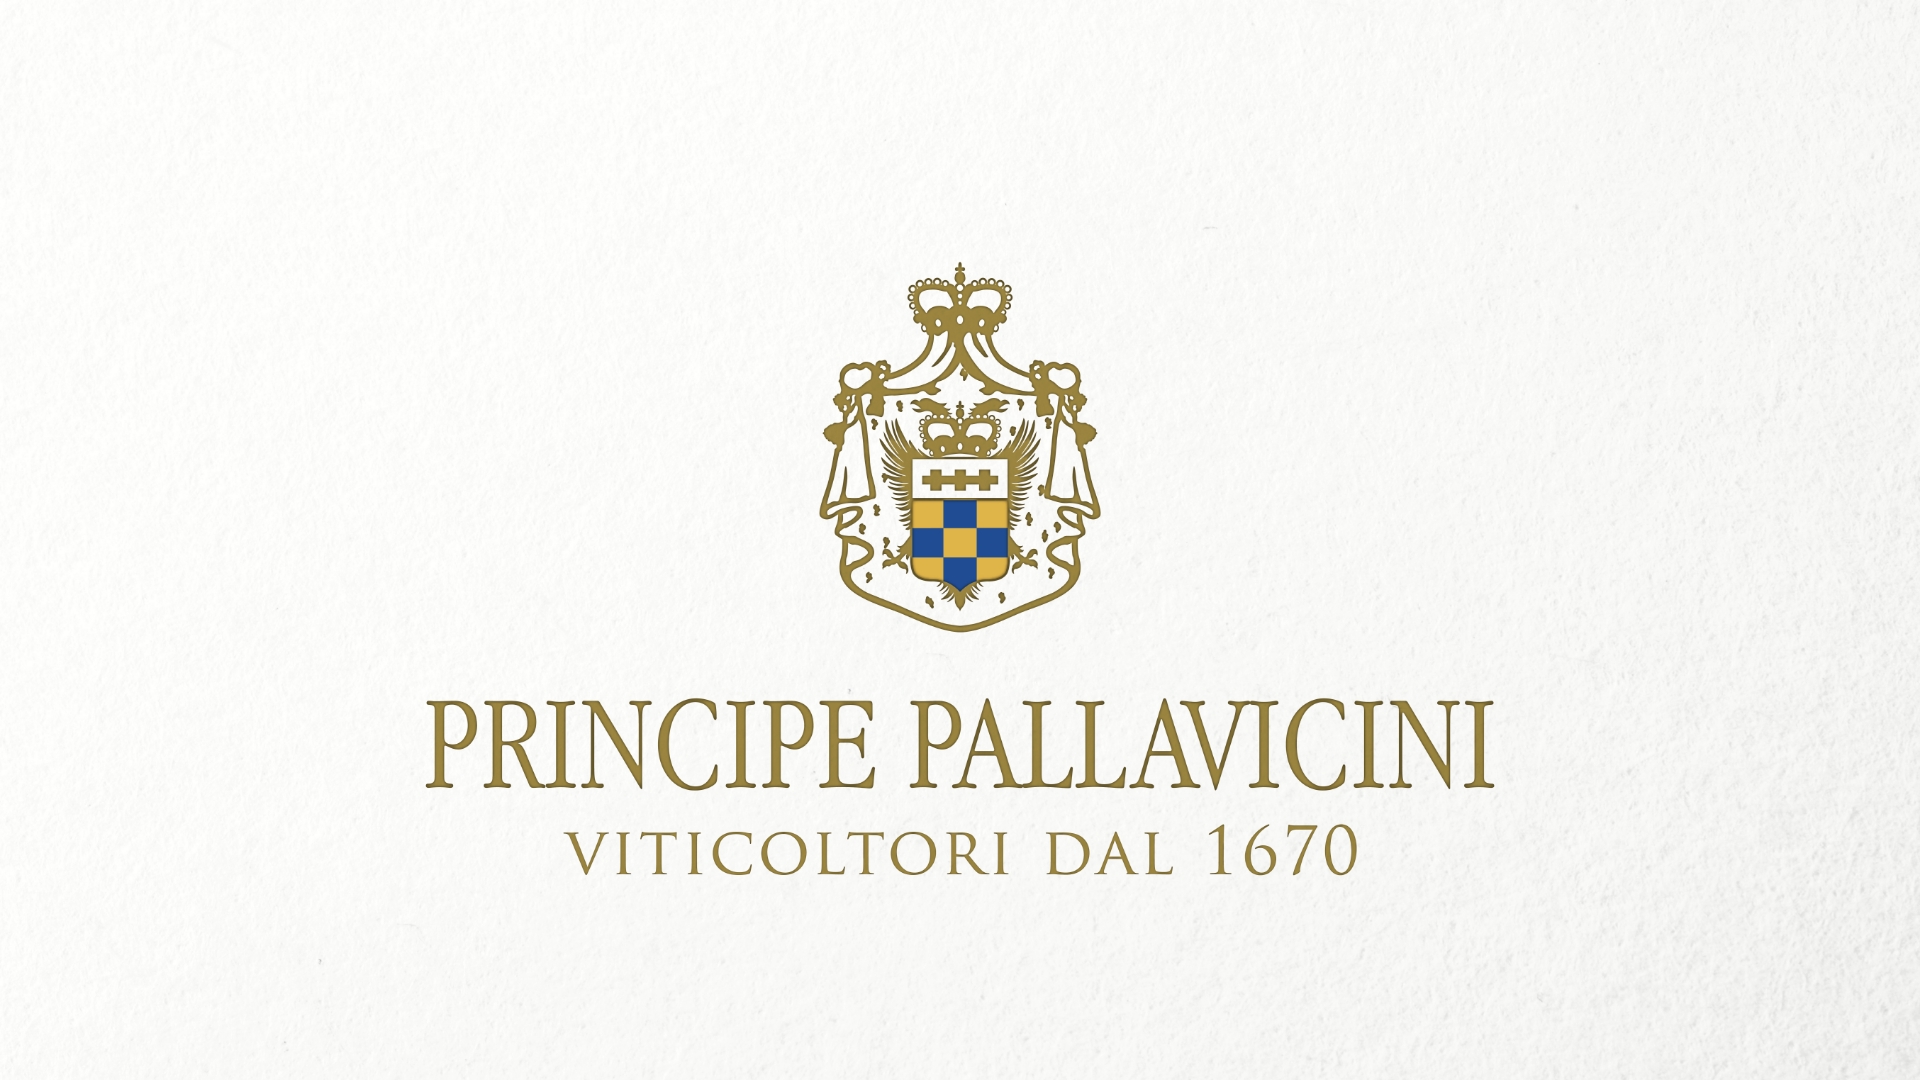 PRINCIPE PALLAVICINI - Roma DOC.